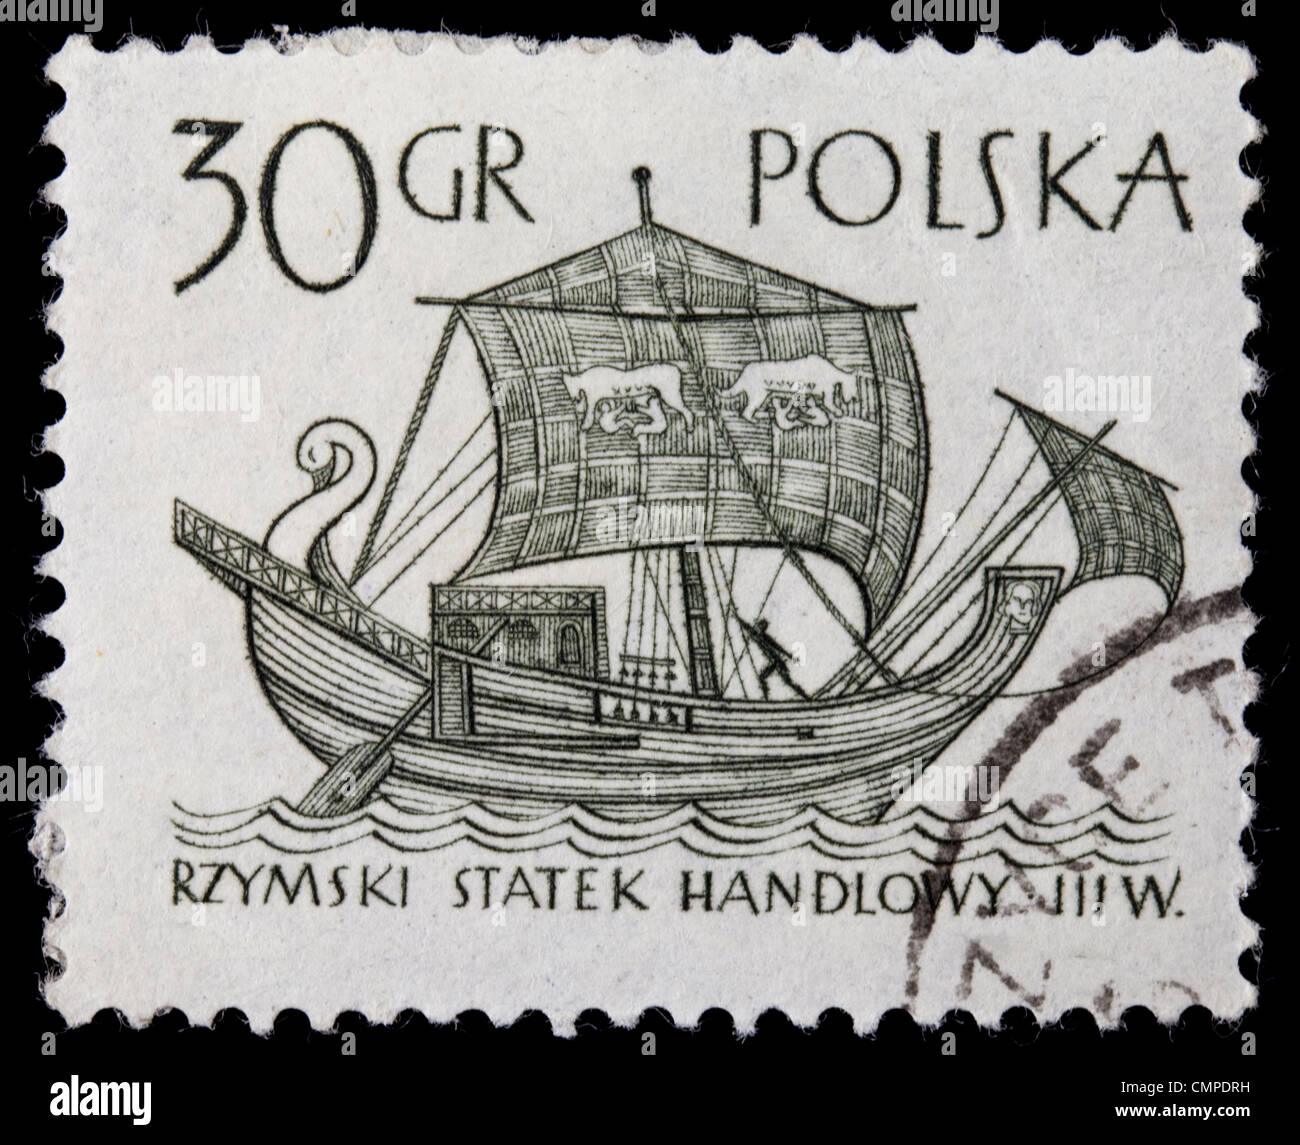 Polen, ca. 1960 - antike römische Händler Segelschiff auf einem Vintage abgebrochen post Stempel, schwarz auf weiß Stockfoto